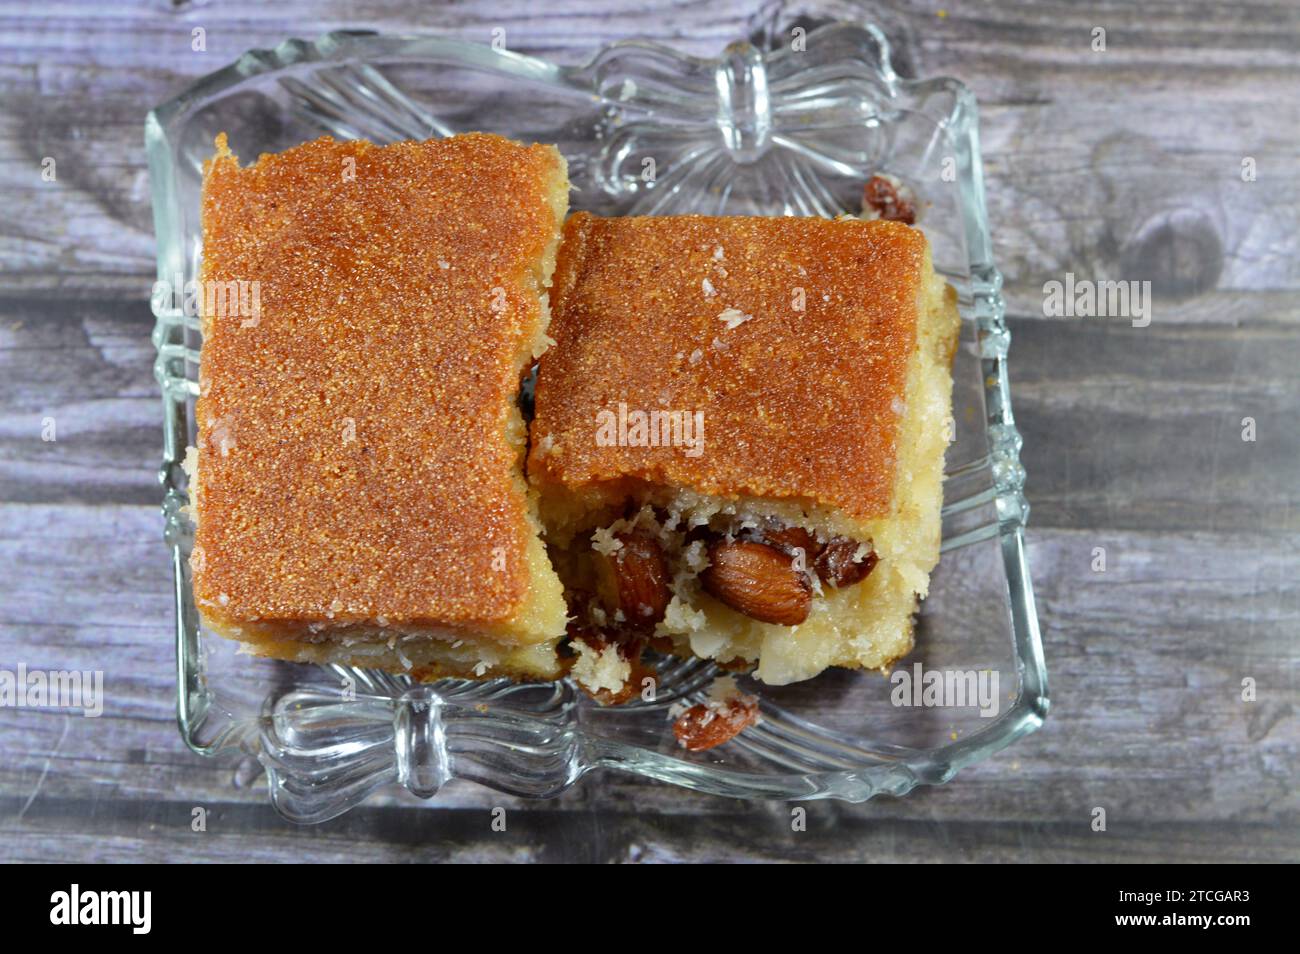 Harissa egiziana, una varietà di torte di semola in Medio Oriente, così decadente e dolce farcita e ripiena di noci, mandorle, uvetta, un'alta e densa Foto Stock